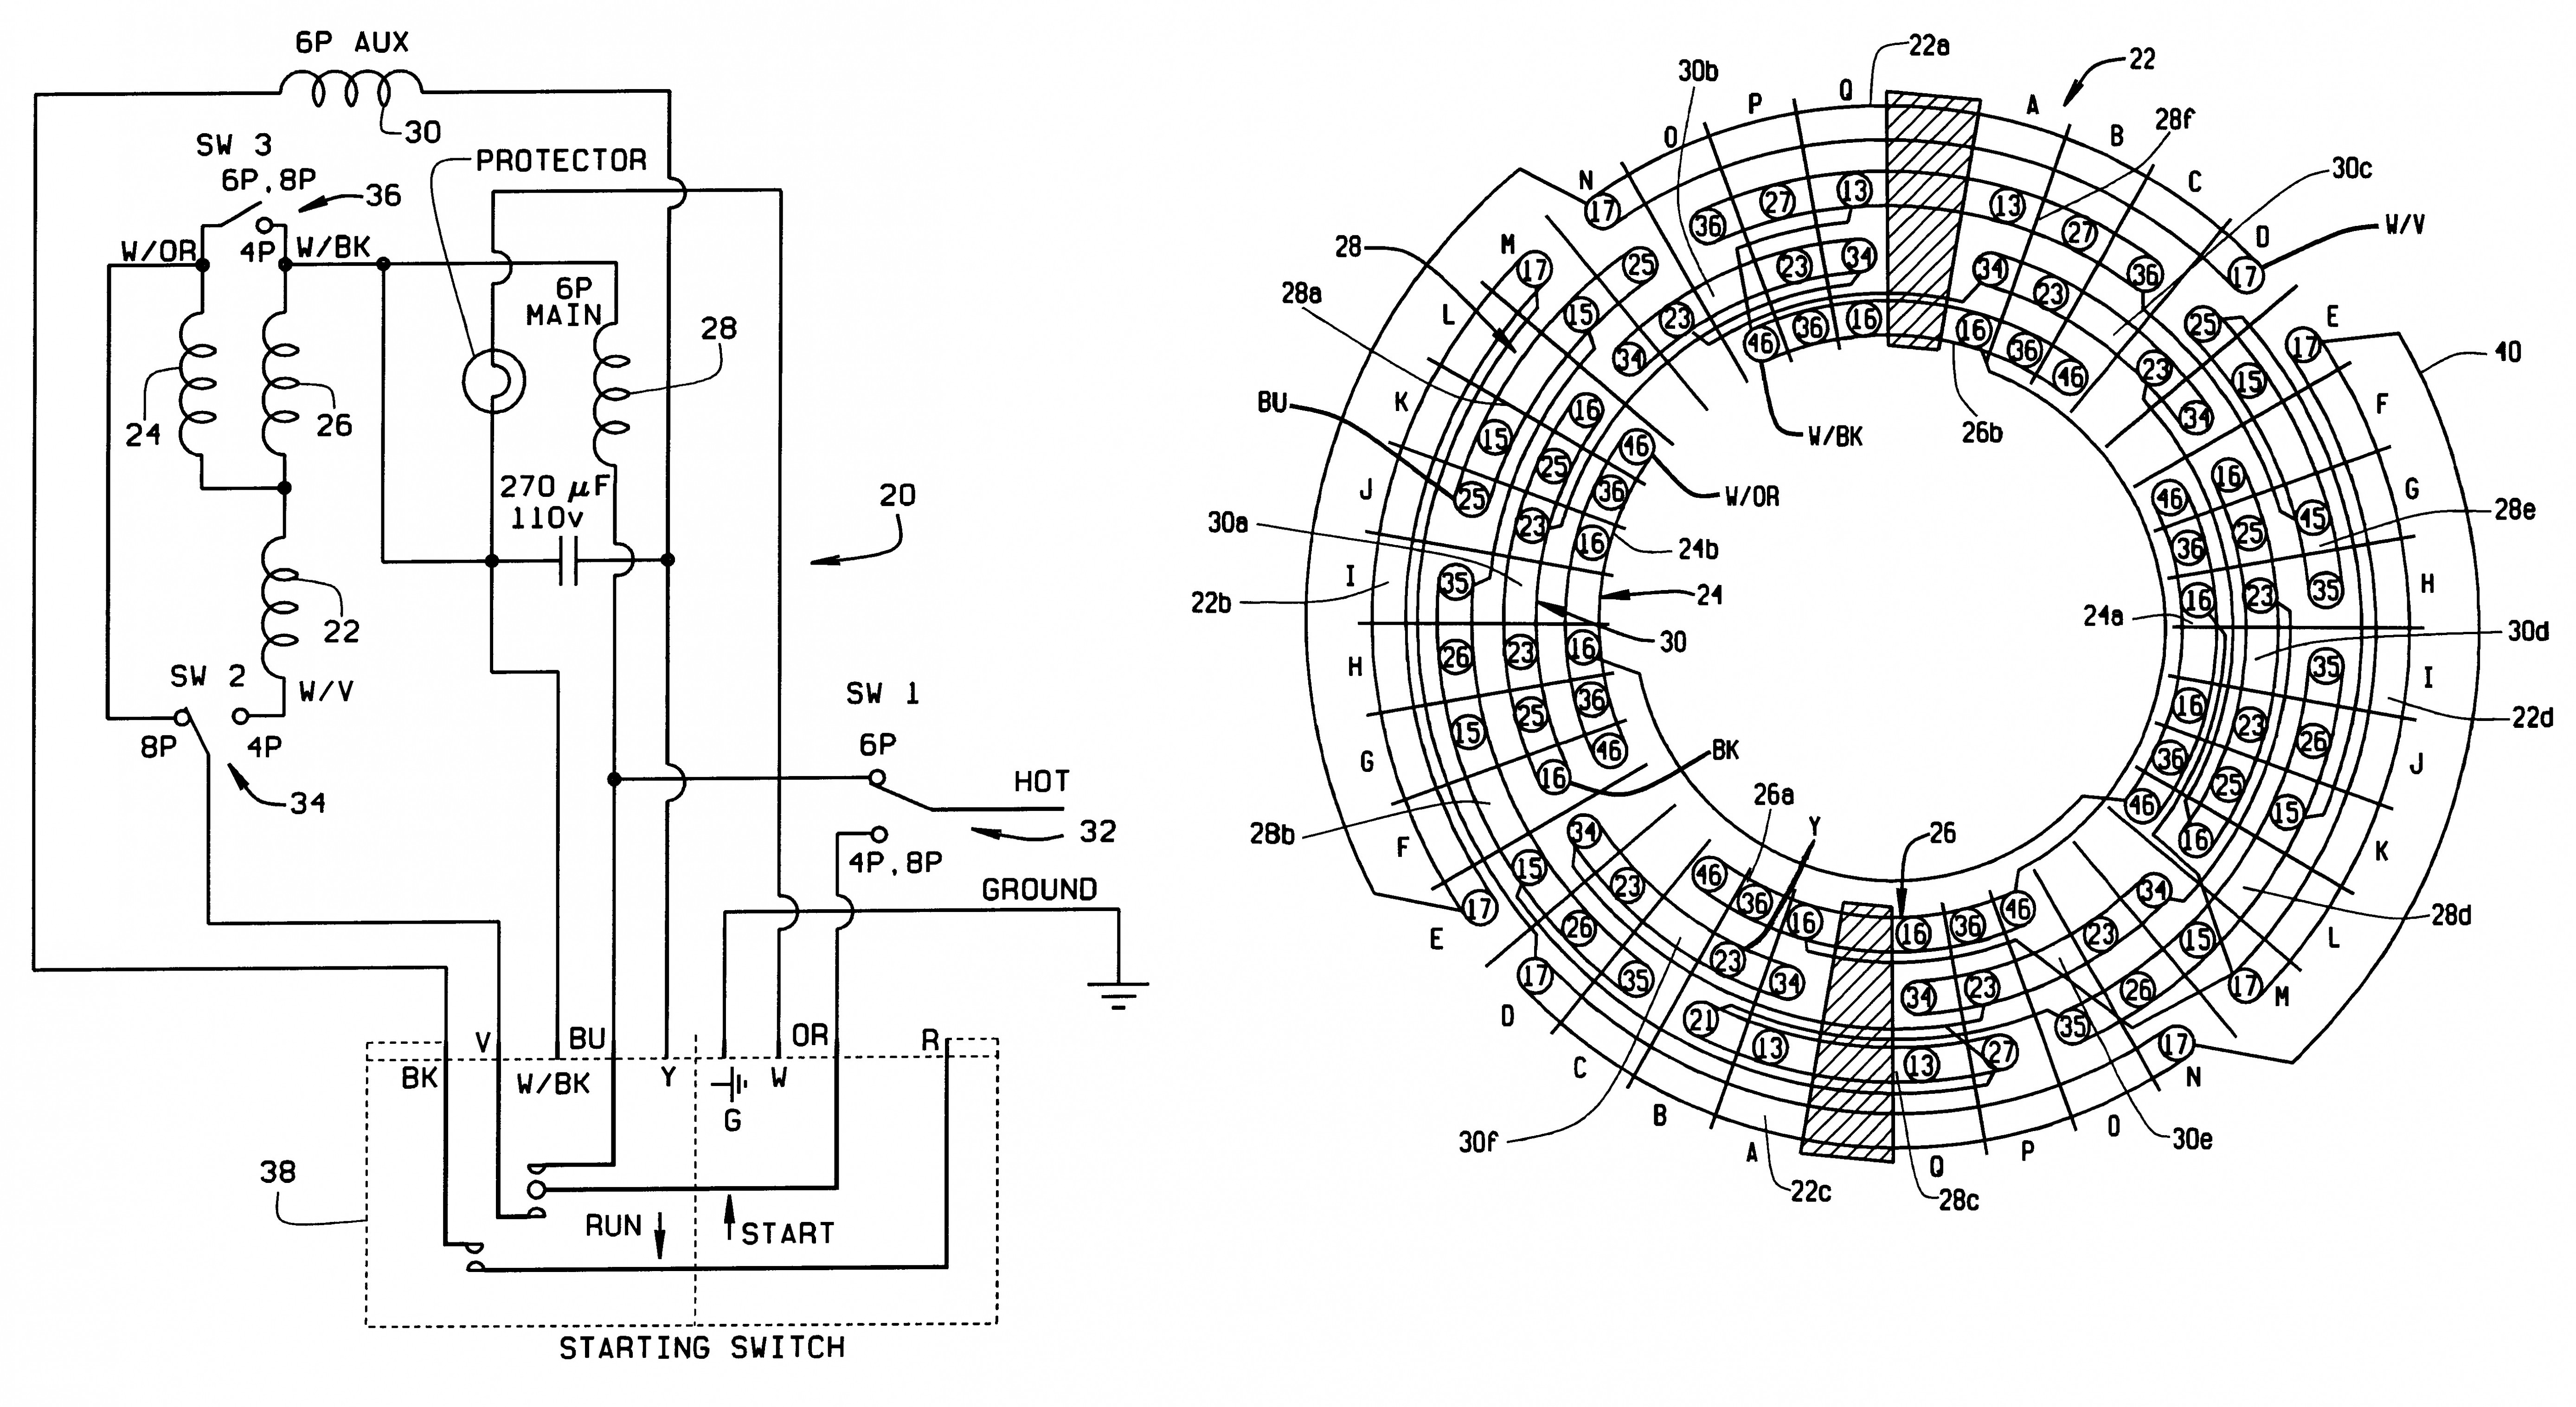 3 Phase Motor Wiring Diagram – Wiring Diagram Two Speed Ac Motor Fresh Two Speed Motor